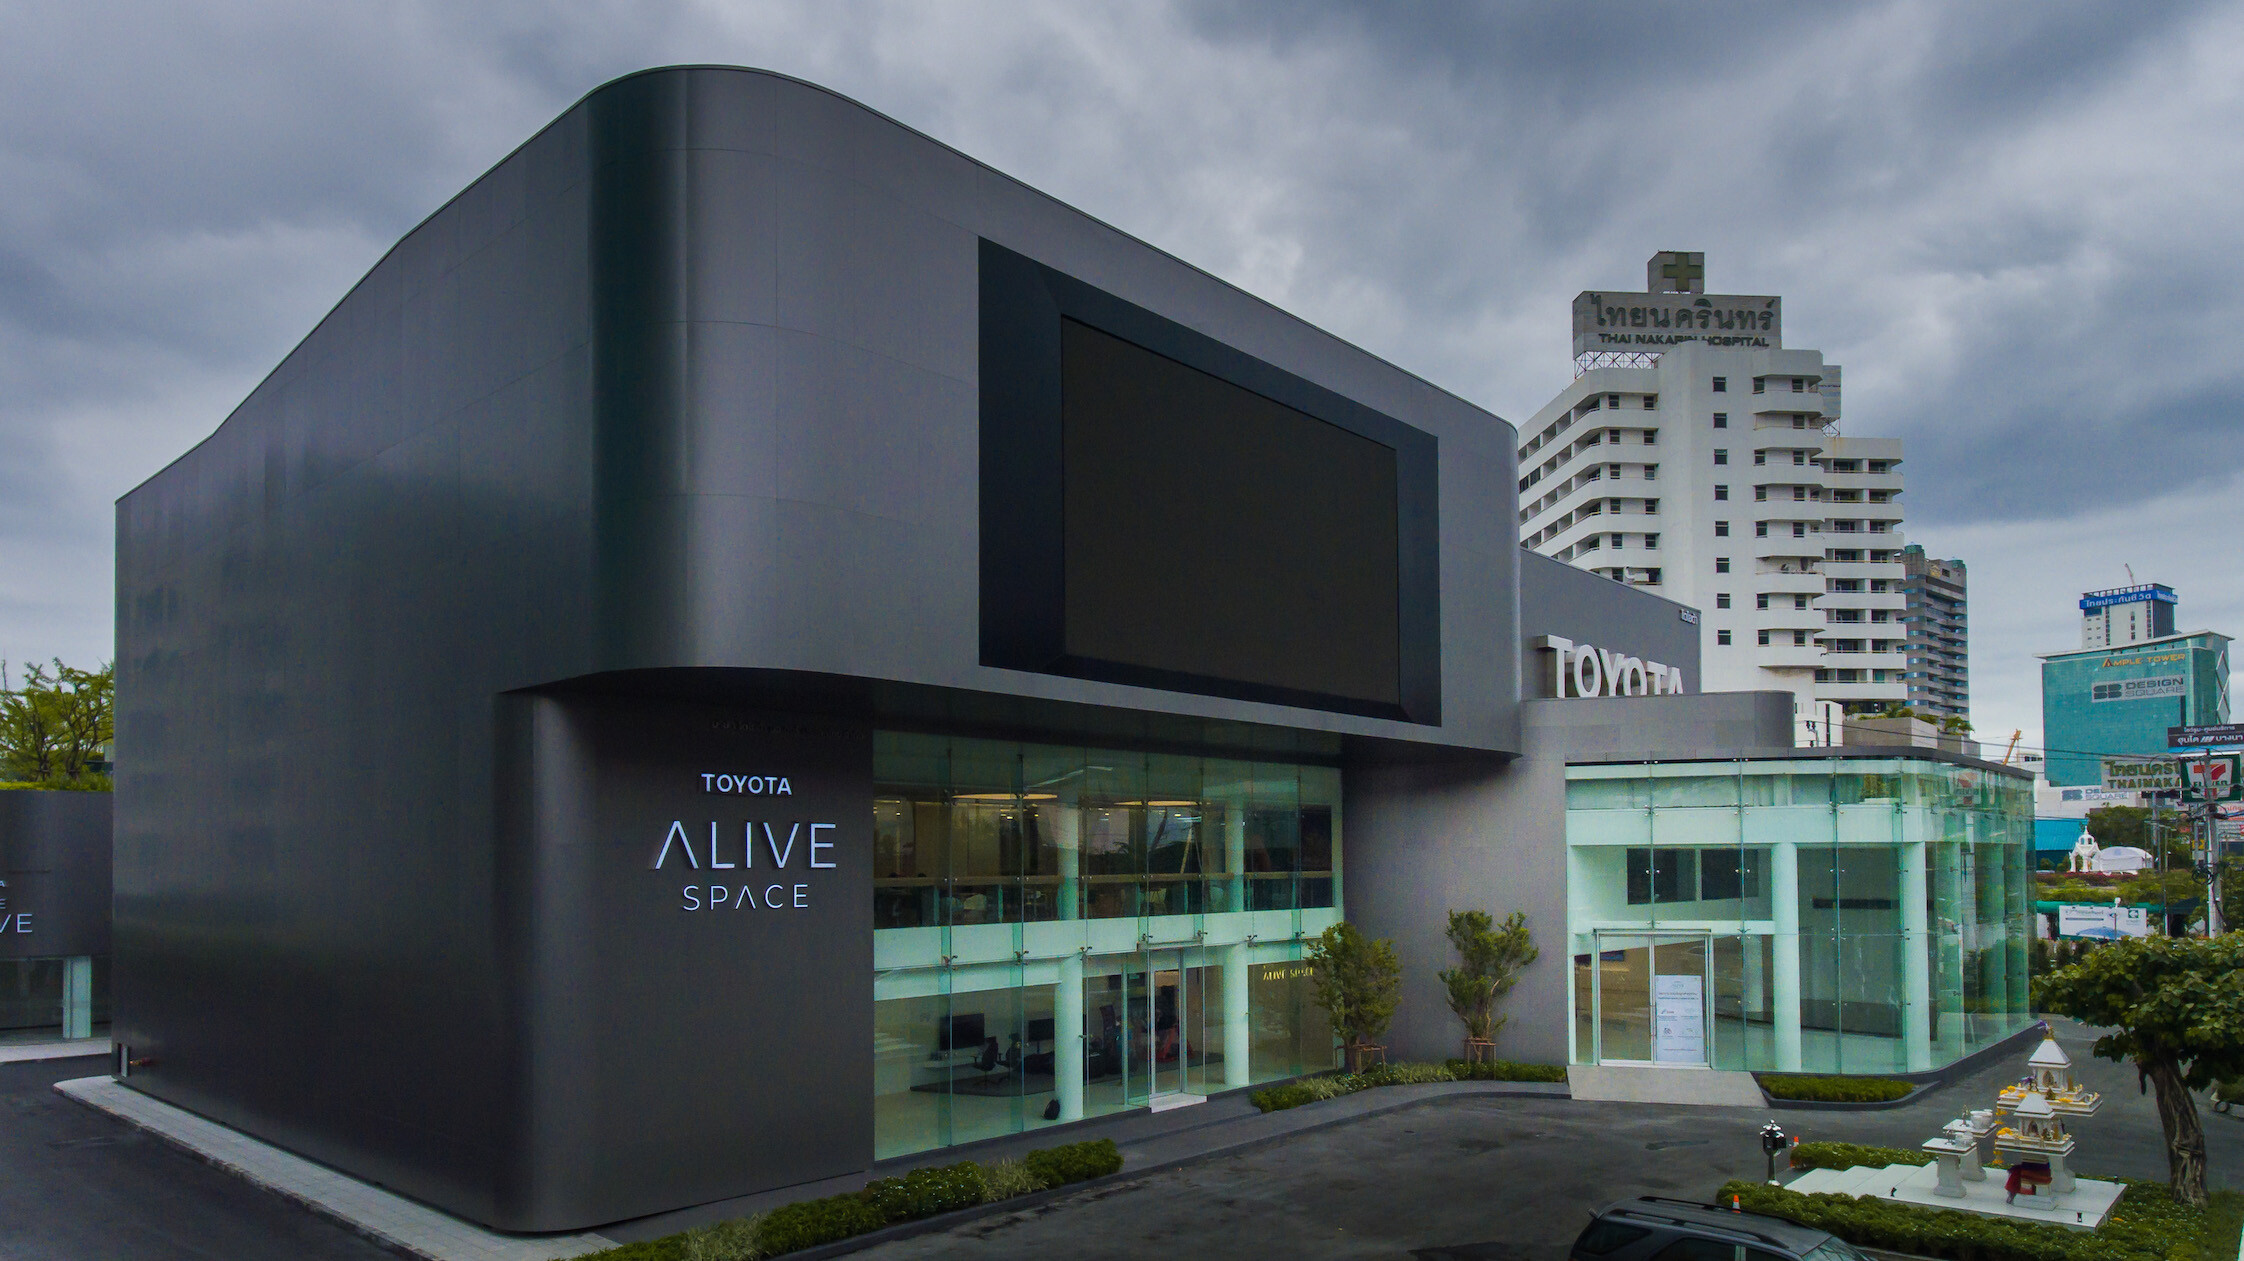 "ซีแพค กรีน โซลูชัน" มุ่งสู่ผู้นำด้าน Digital & Construction Technology เนรมิตโครงการ "Toyota Alive Space" 3 อาคารในเวลาเพียง 13 เดือน